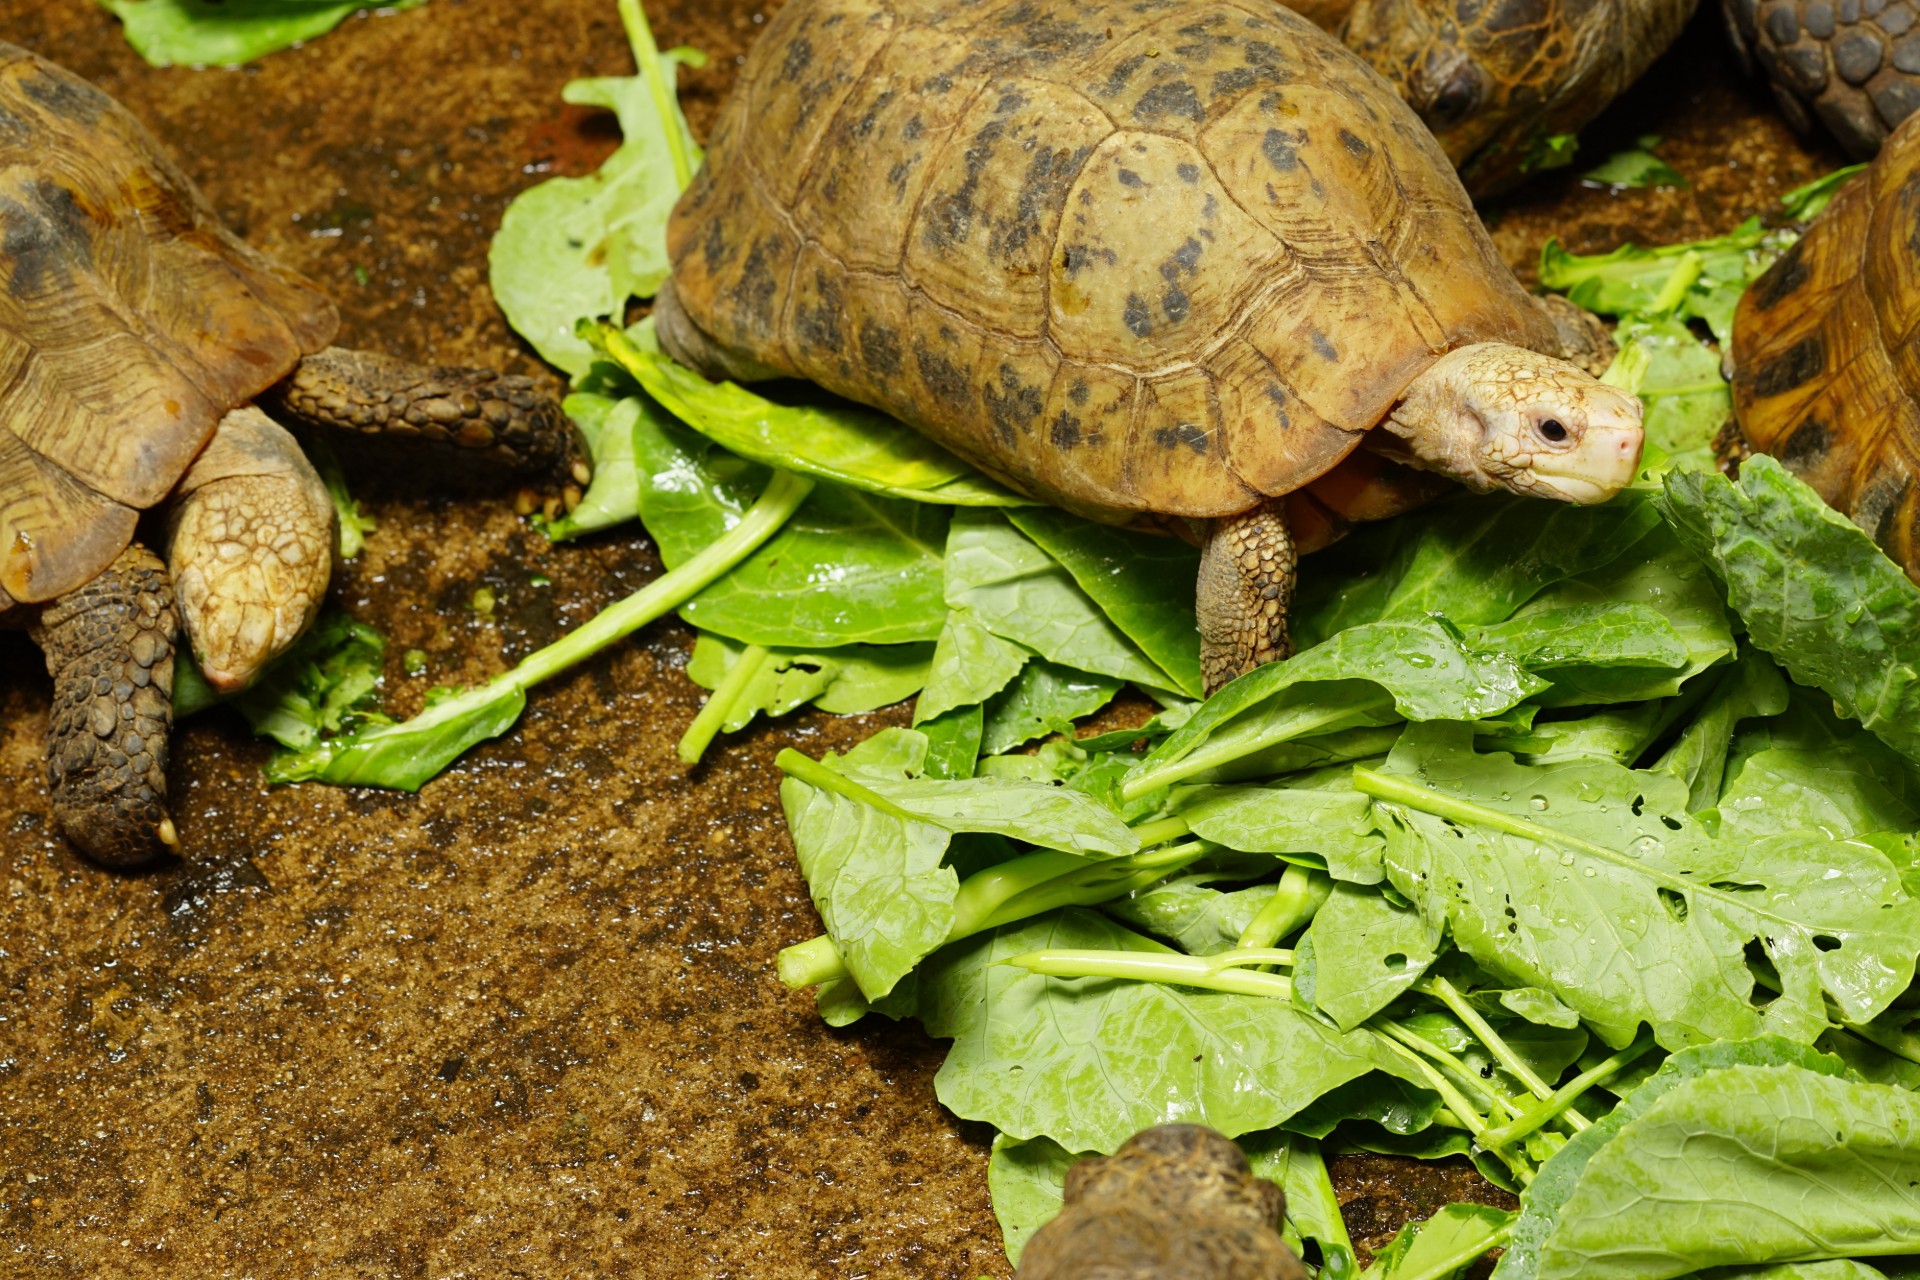 Two turtles eating kale